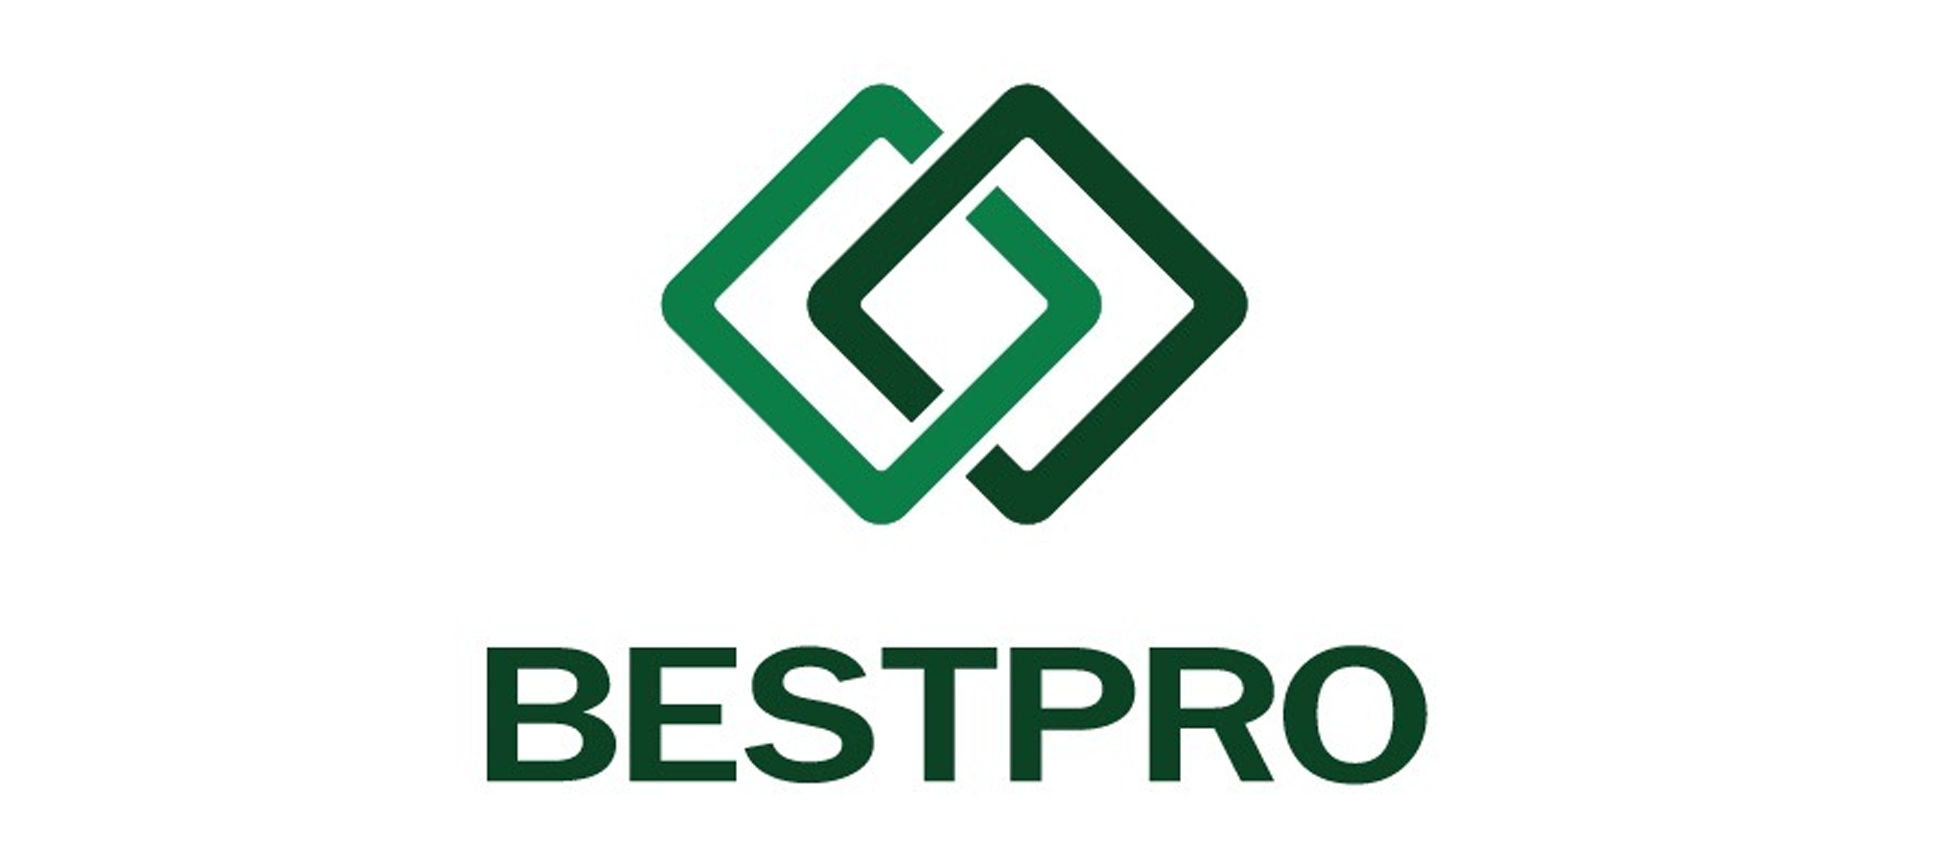 Betpro Logo